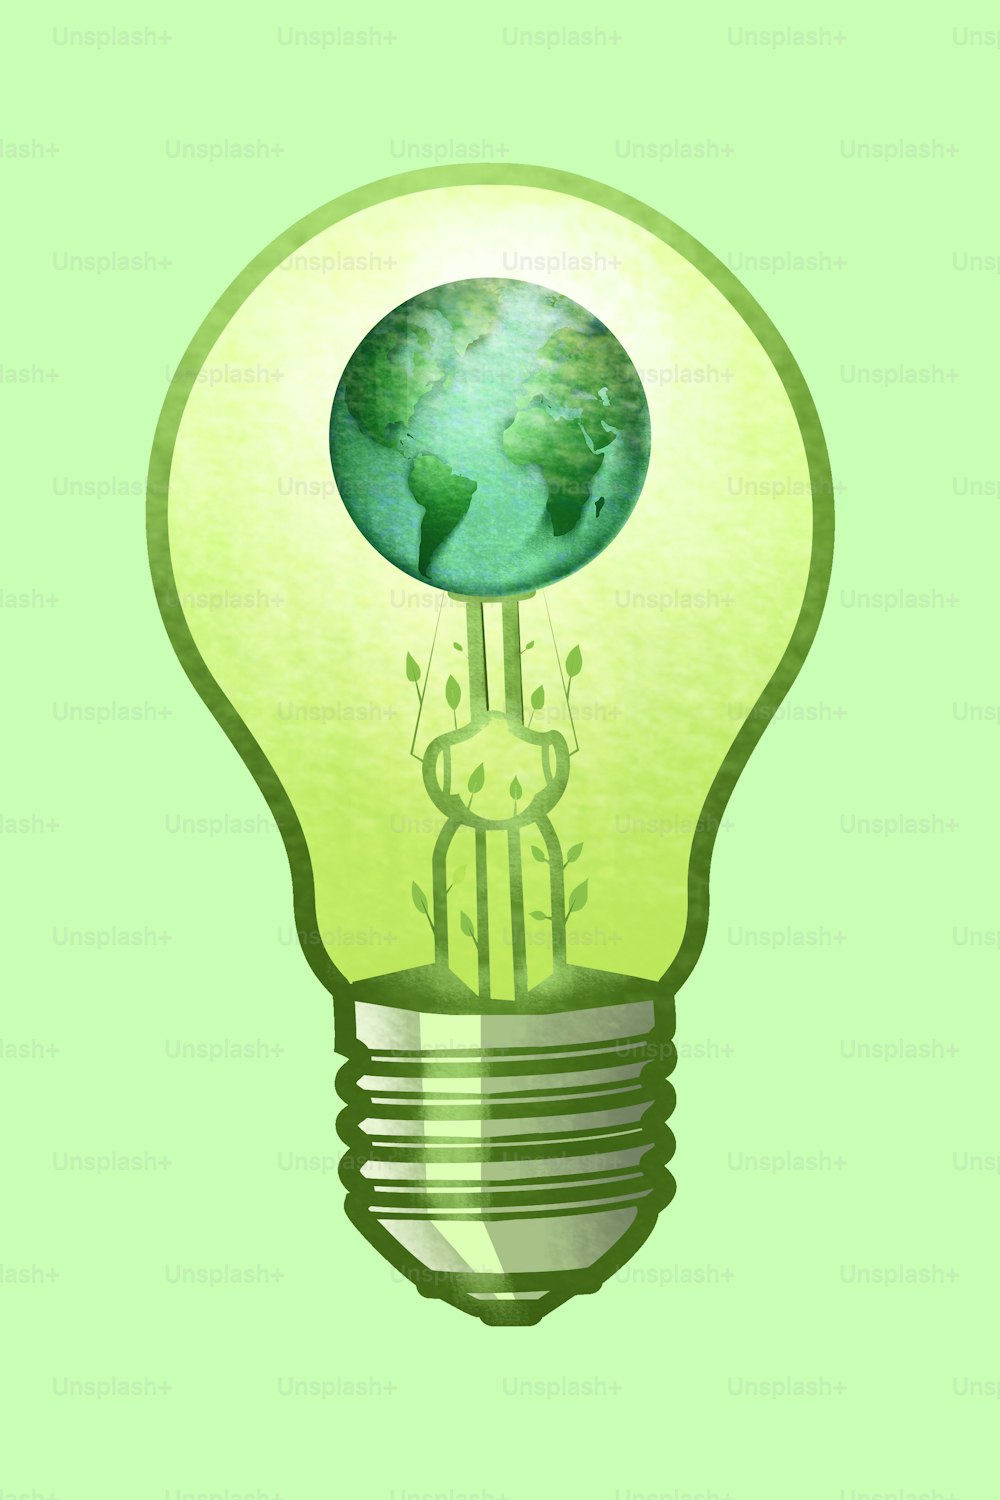 Erneuerbare Energiequellen. Grünes Energiekonzept mit Glühbirne, Planet Erde und Blättern